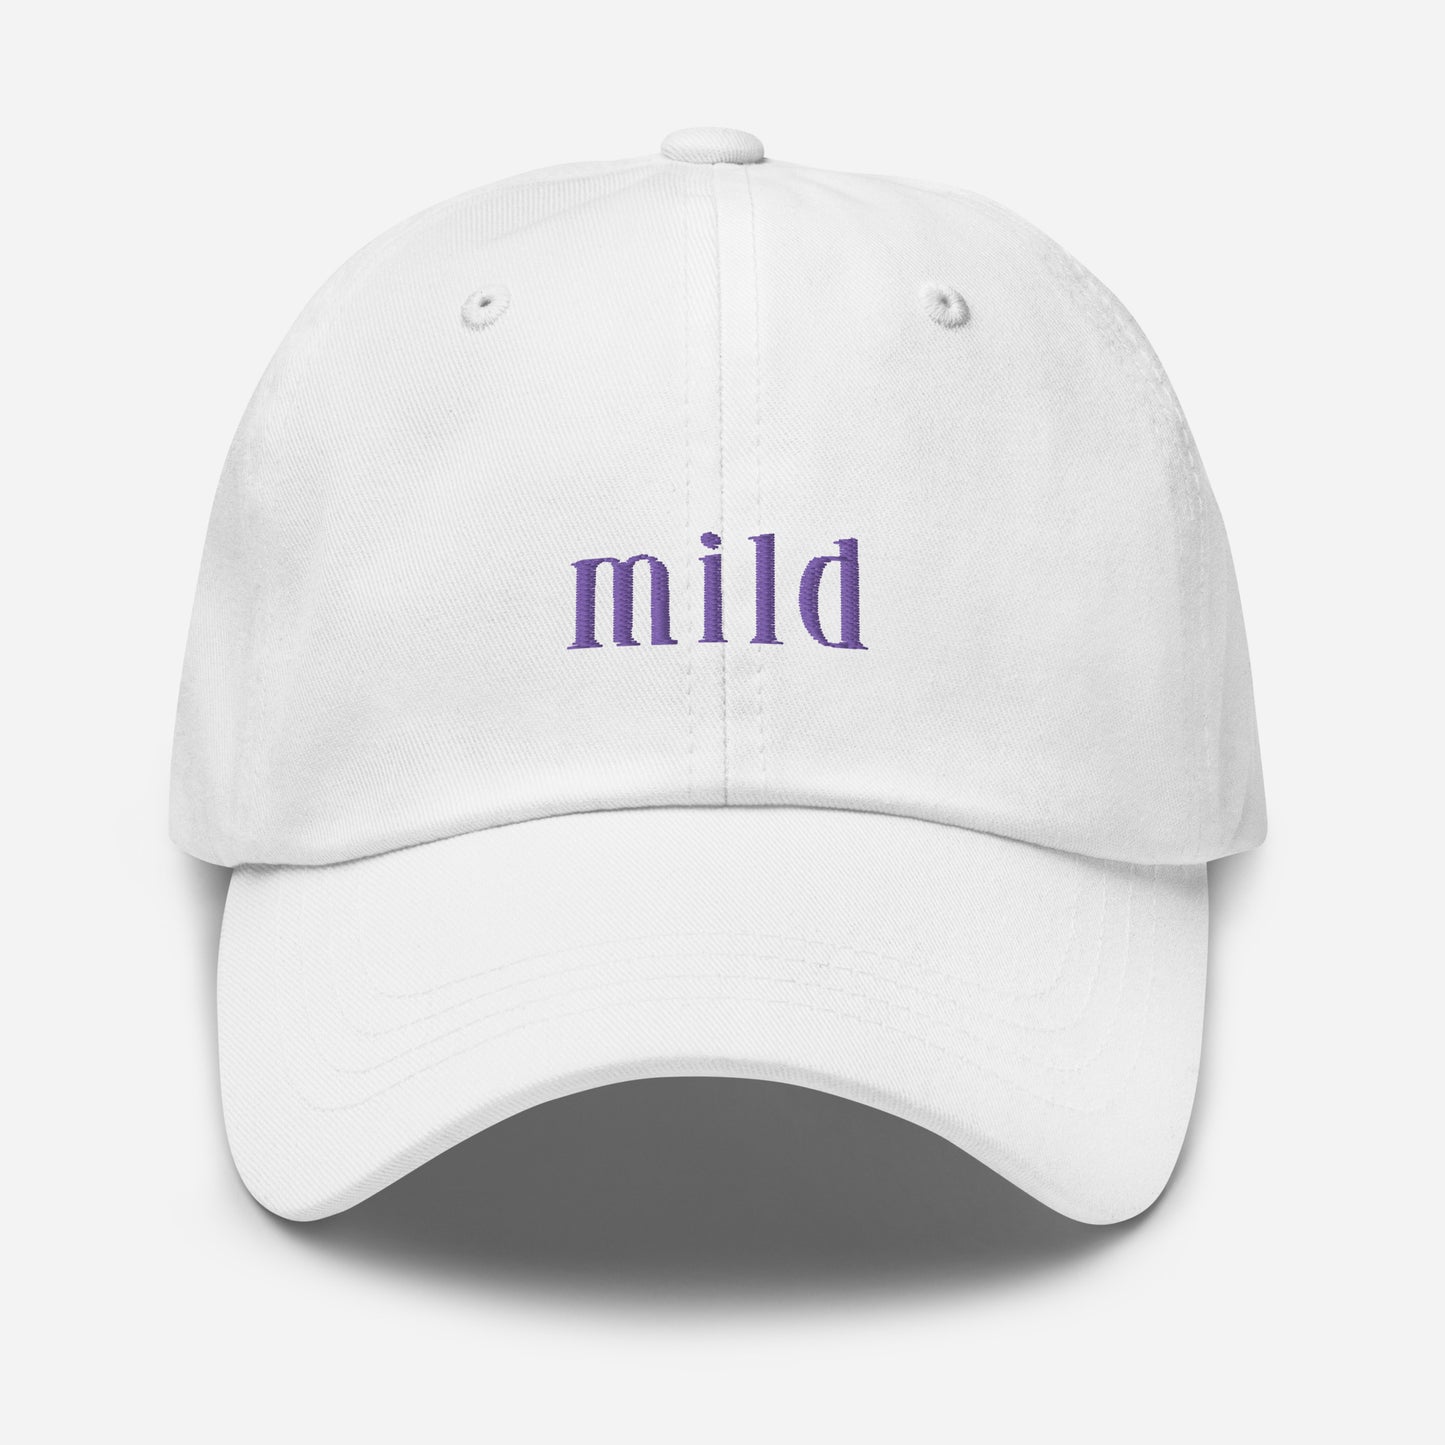 Girls Gone Mild "Mild" Dad Hat